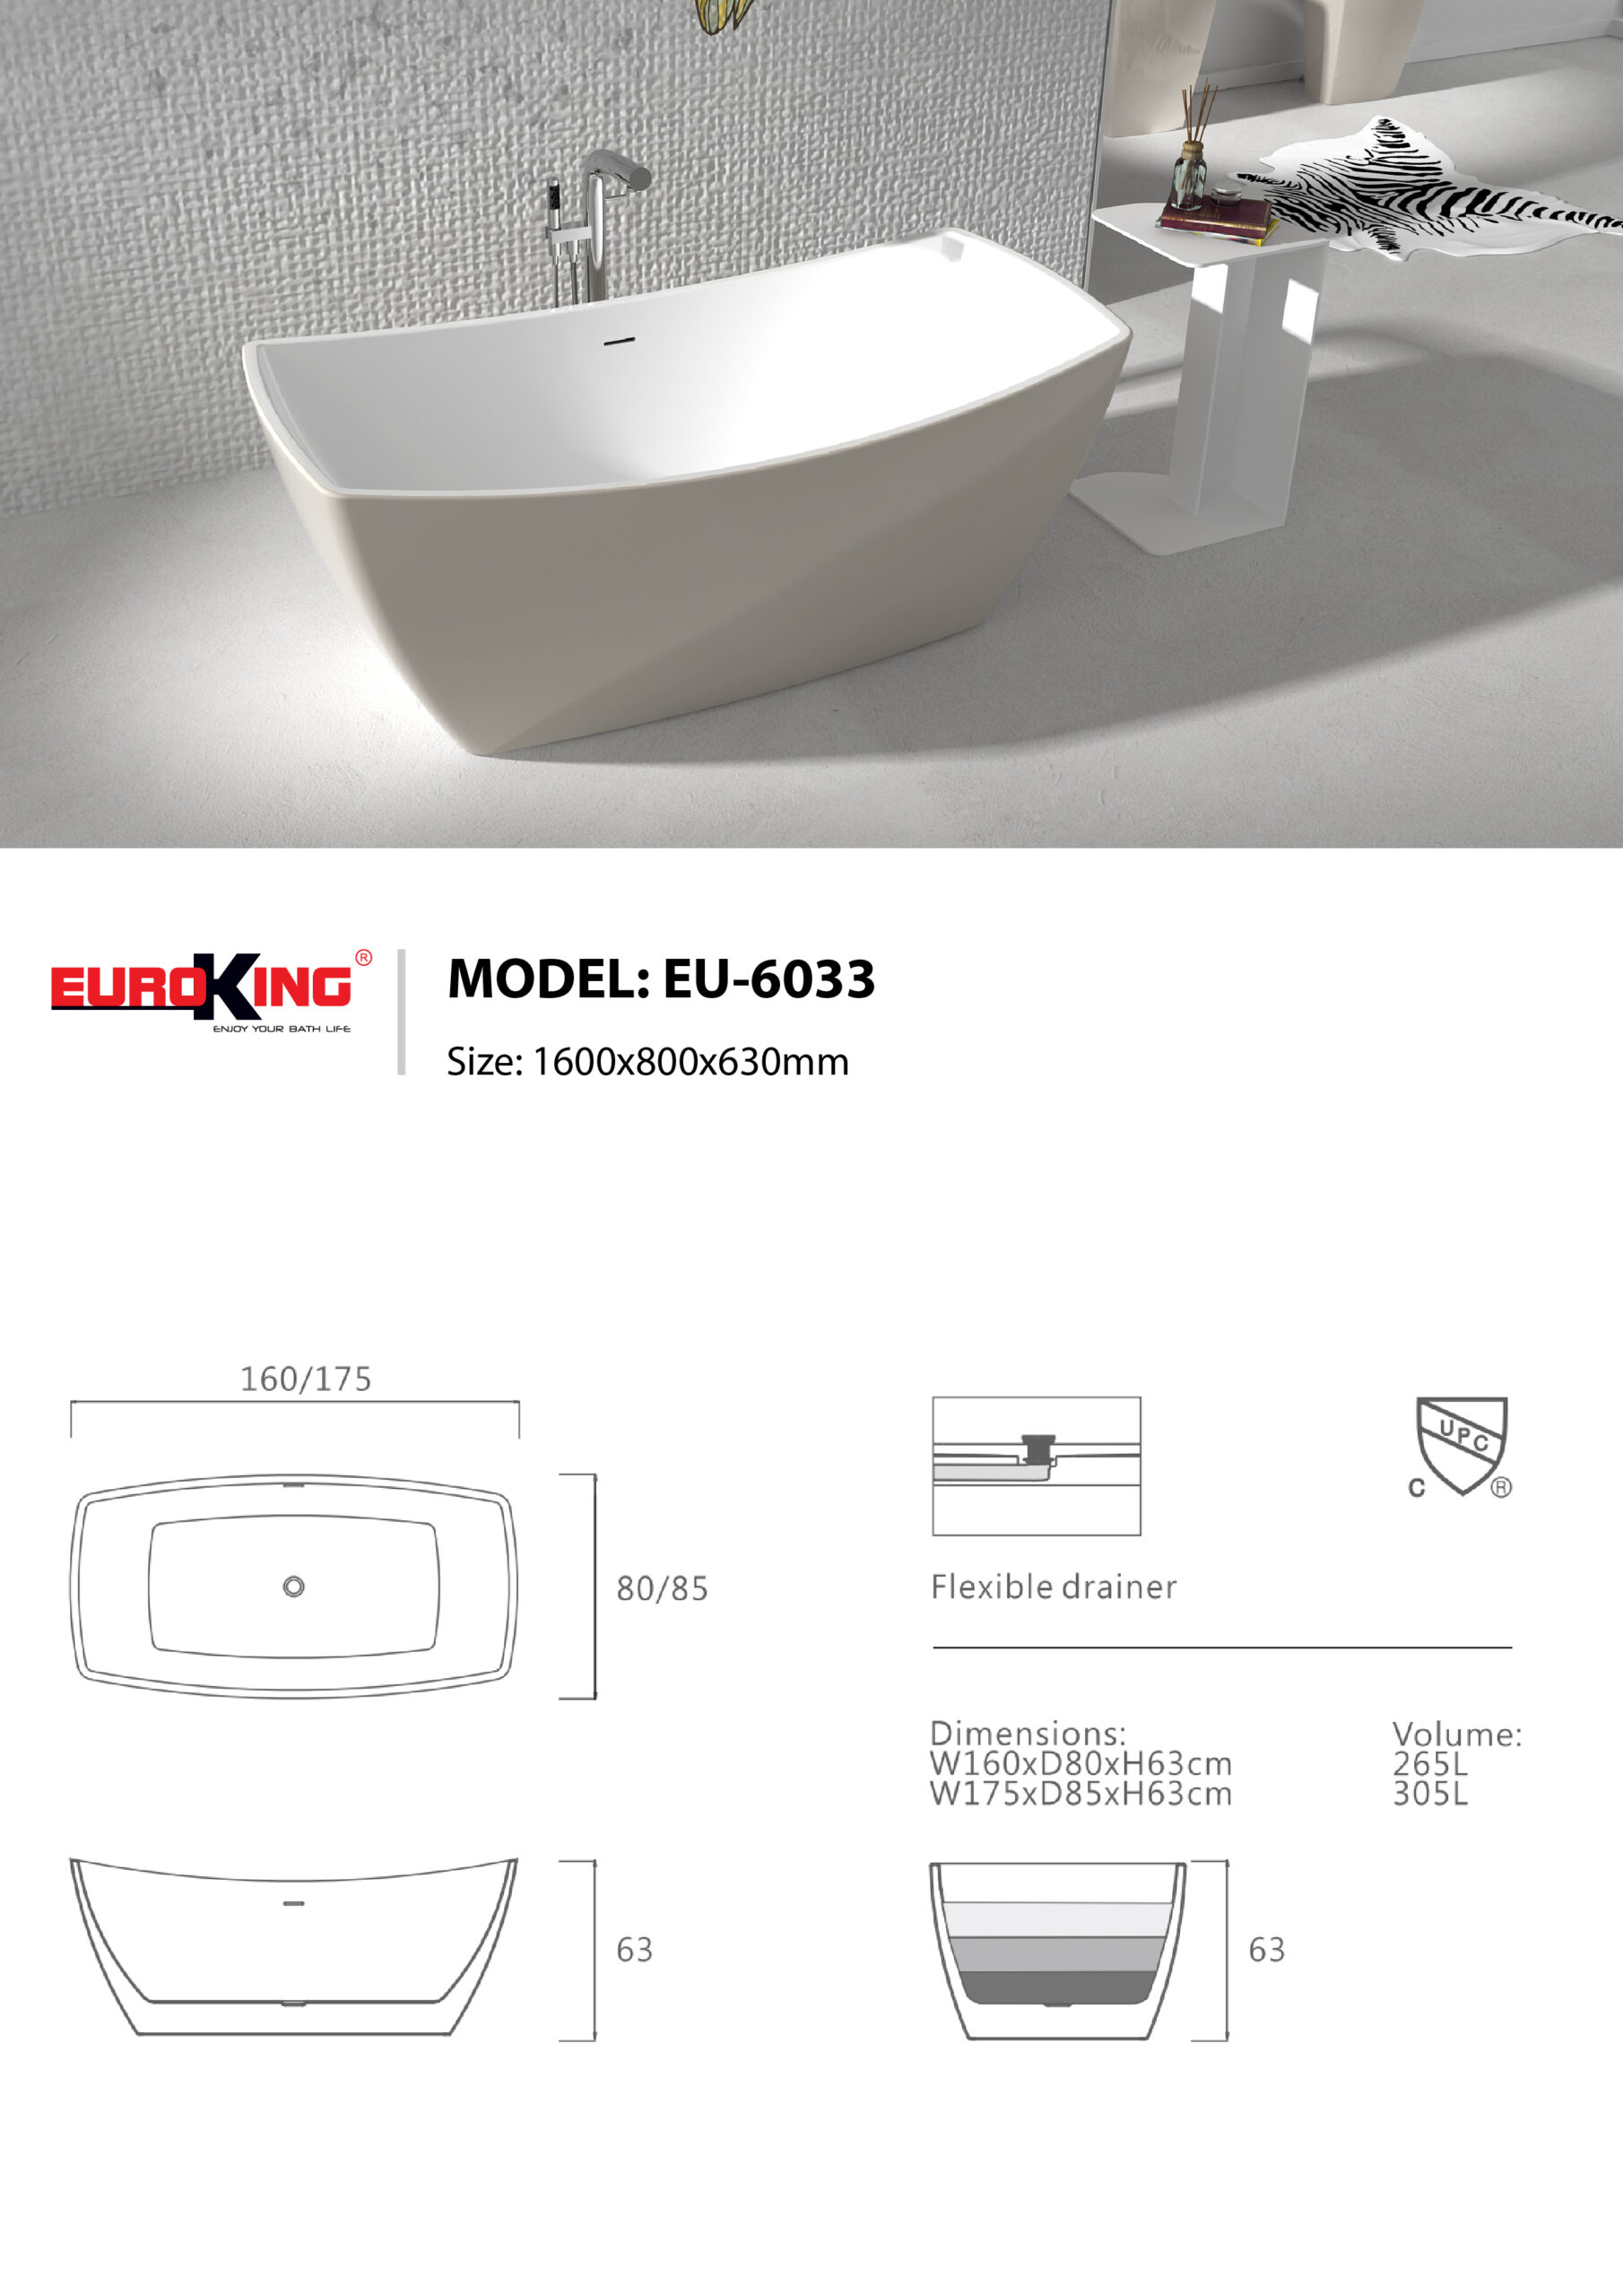 Sơ đồ kỹ thuật bồn tắm eu-6033